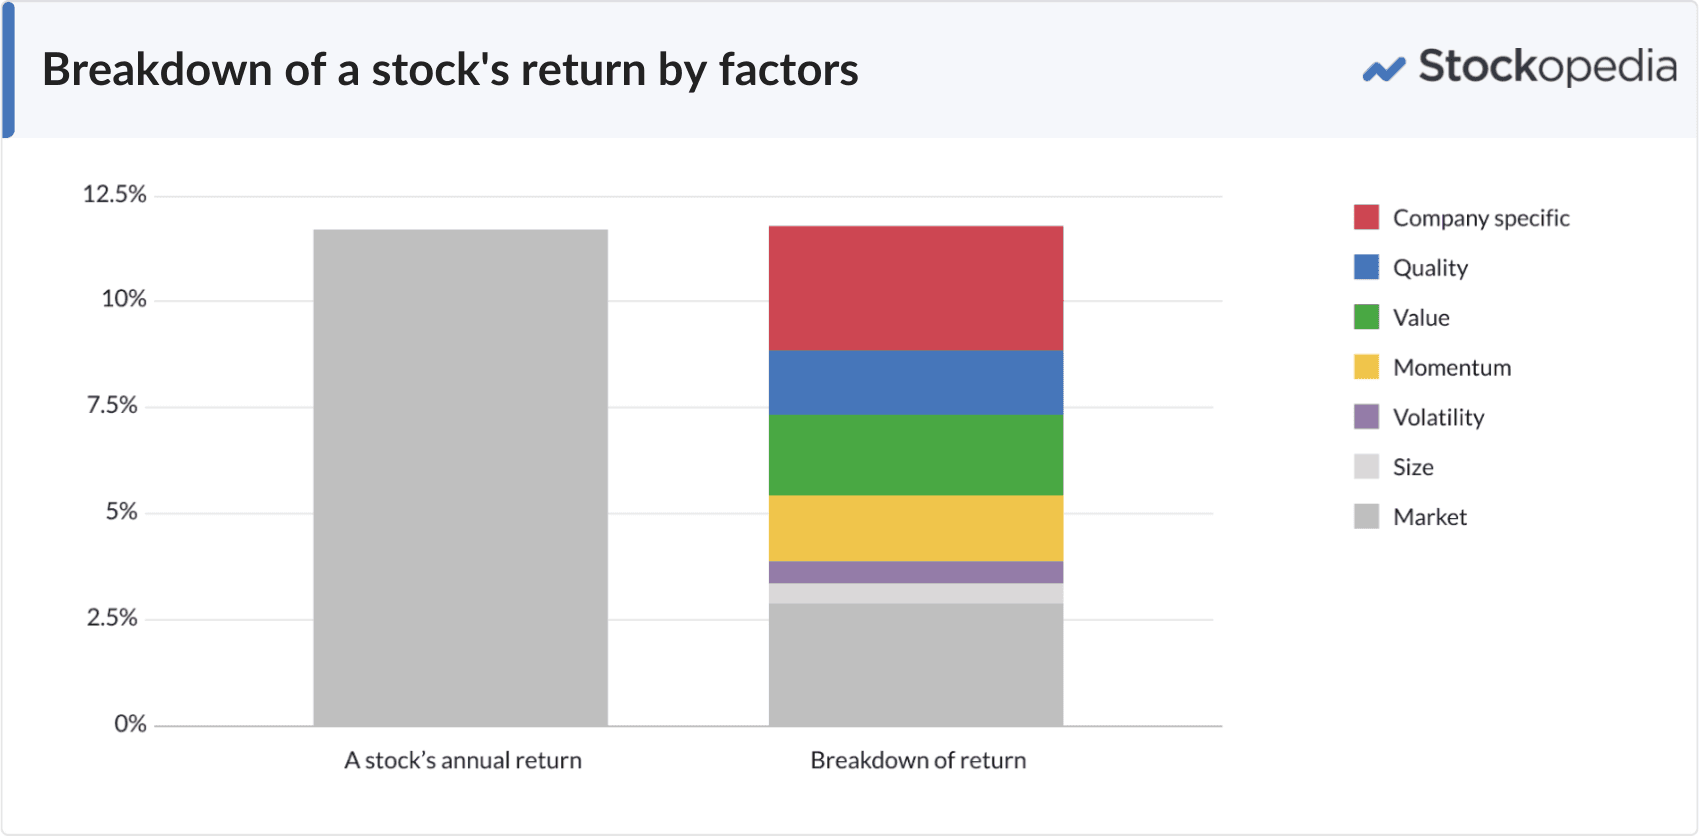 Breakdown of a stock's return by factors